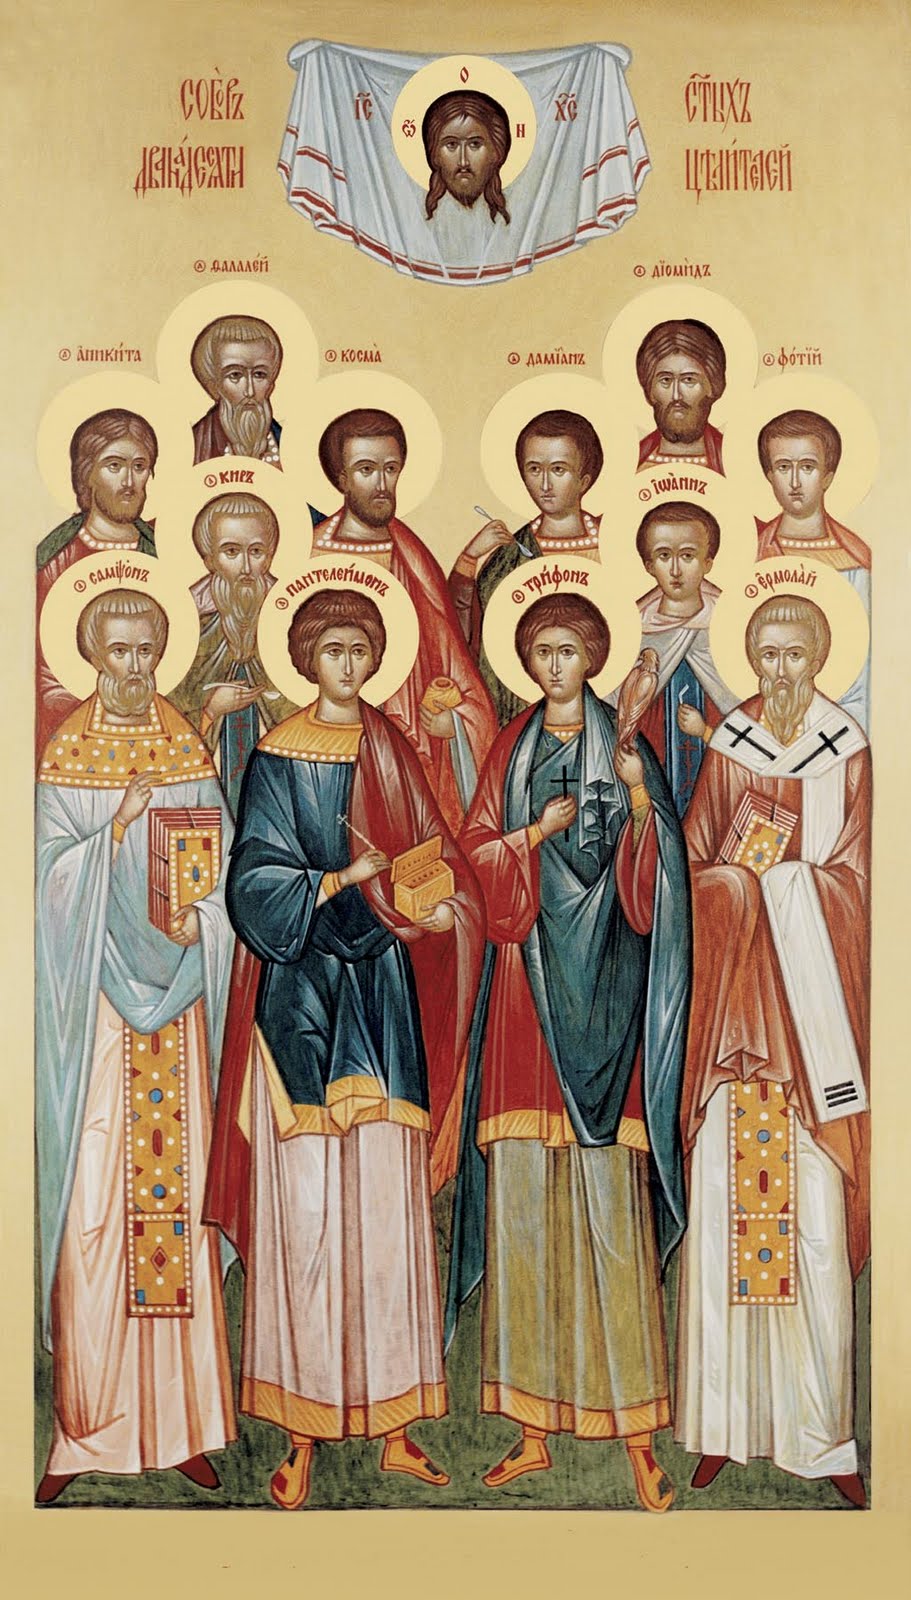 Православные святые про